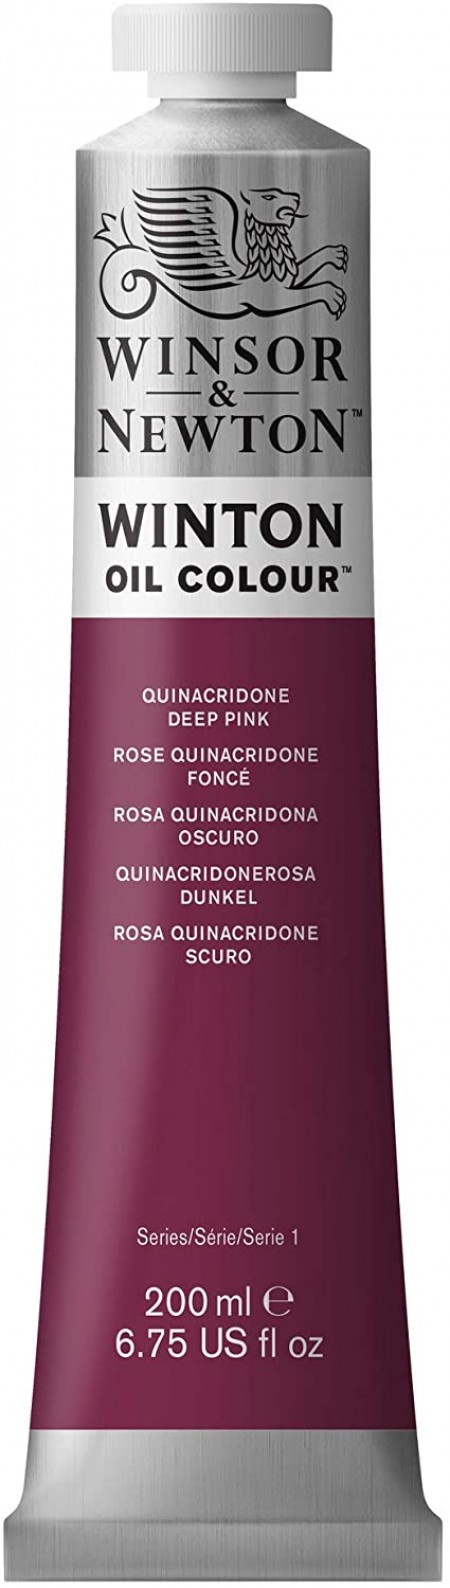 Colore a olio Winsor & Newton Winton rosa quinacridone scuro